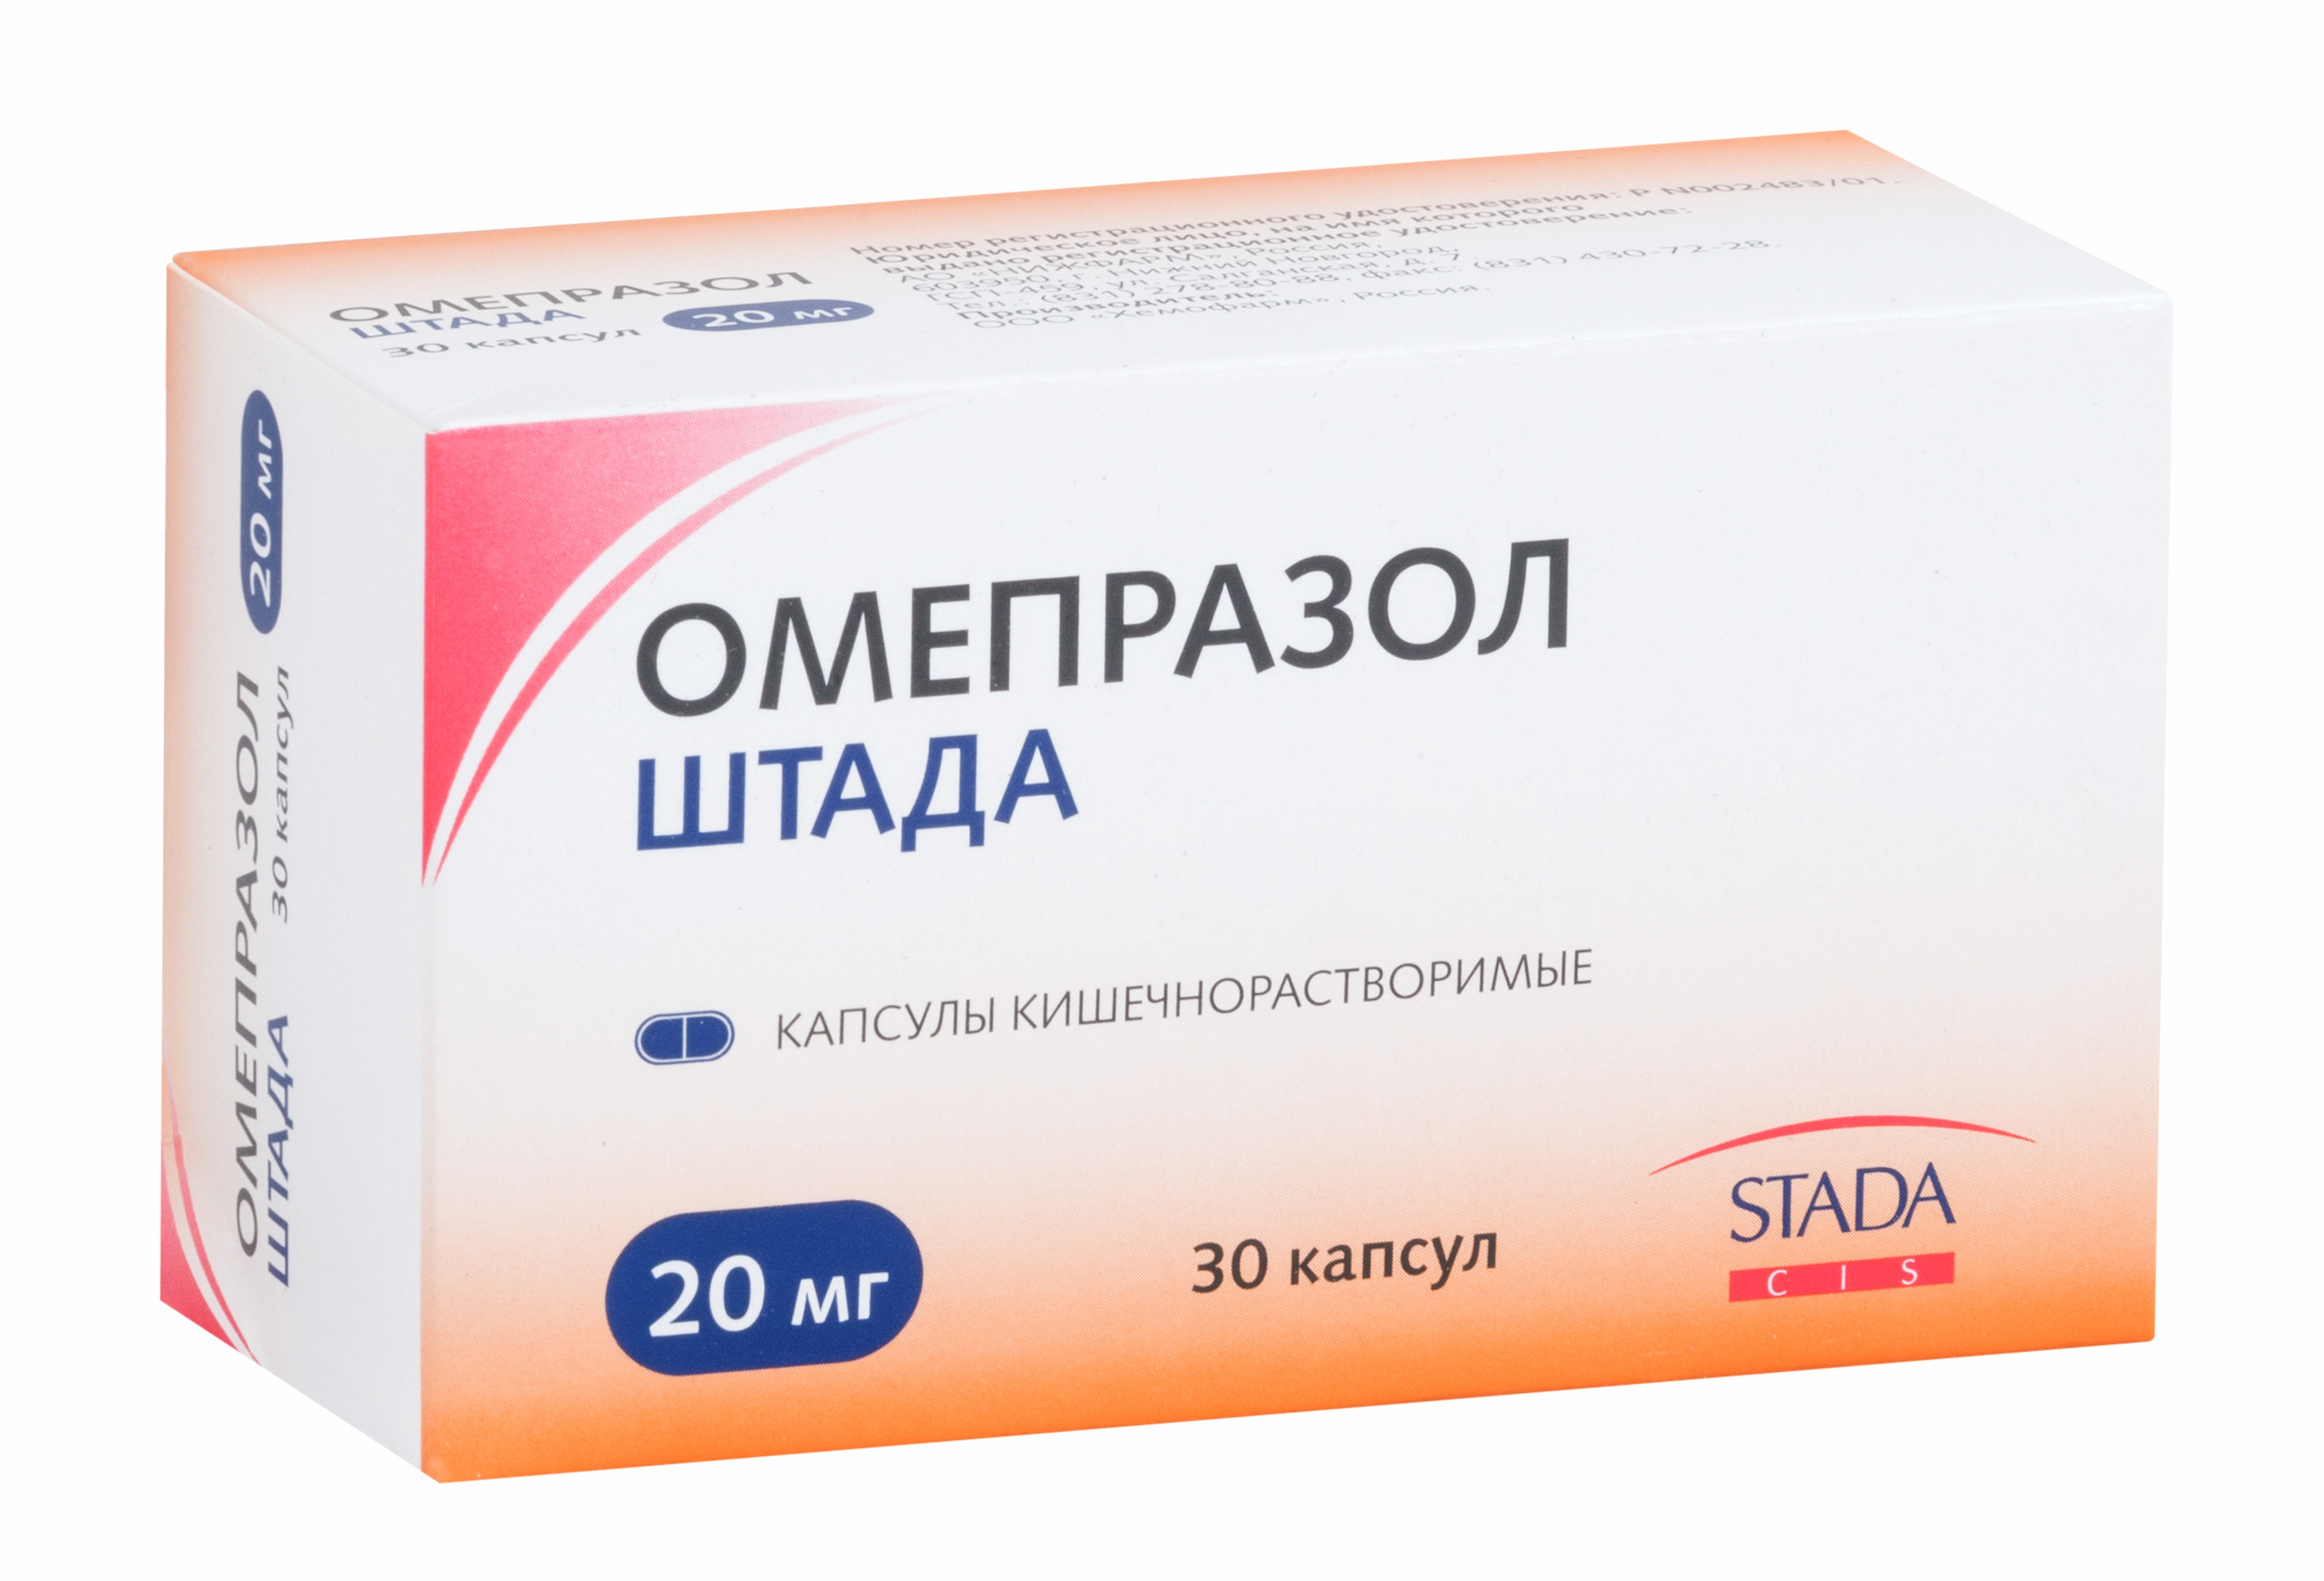 Омепразол ШТАДА капс. кишечнораствор. 20 мг №30